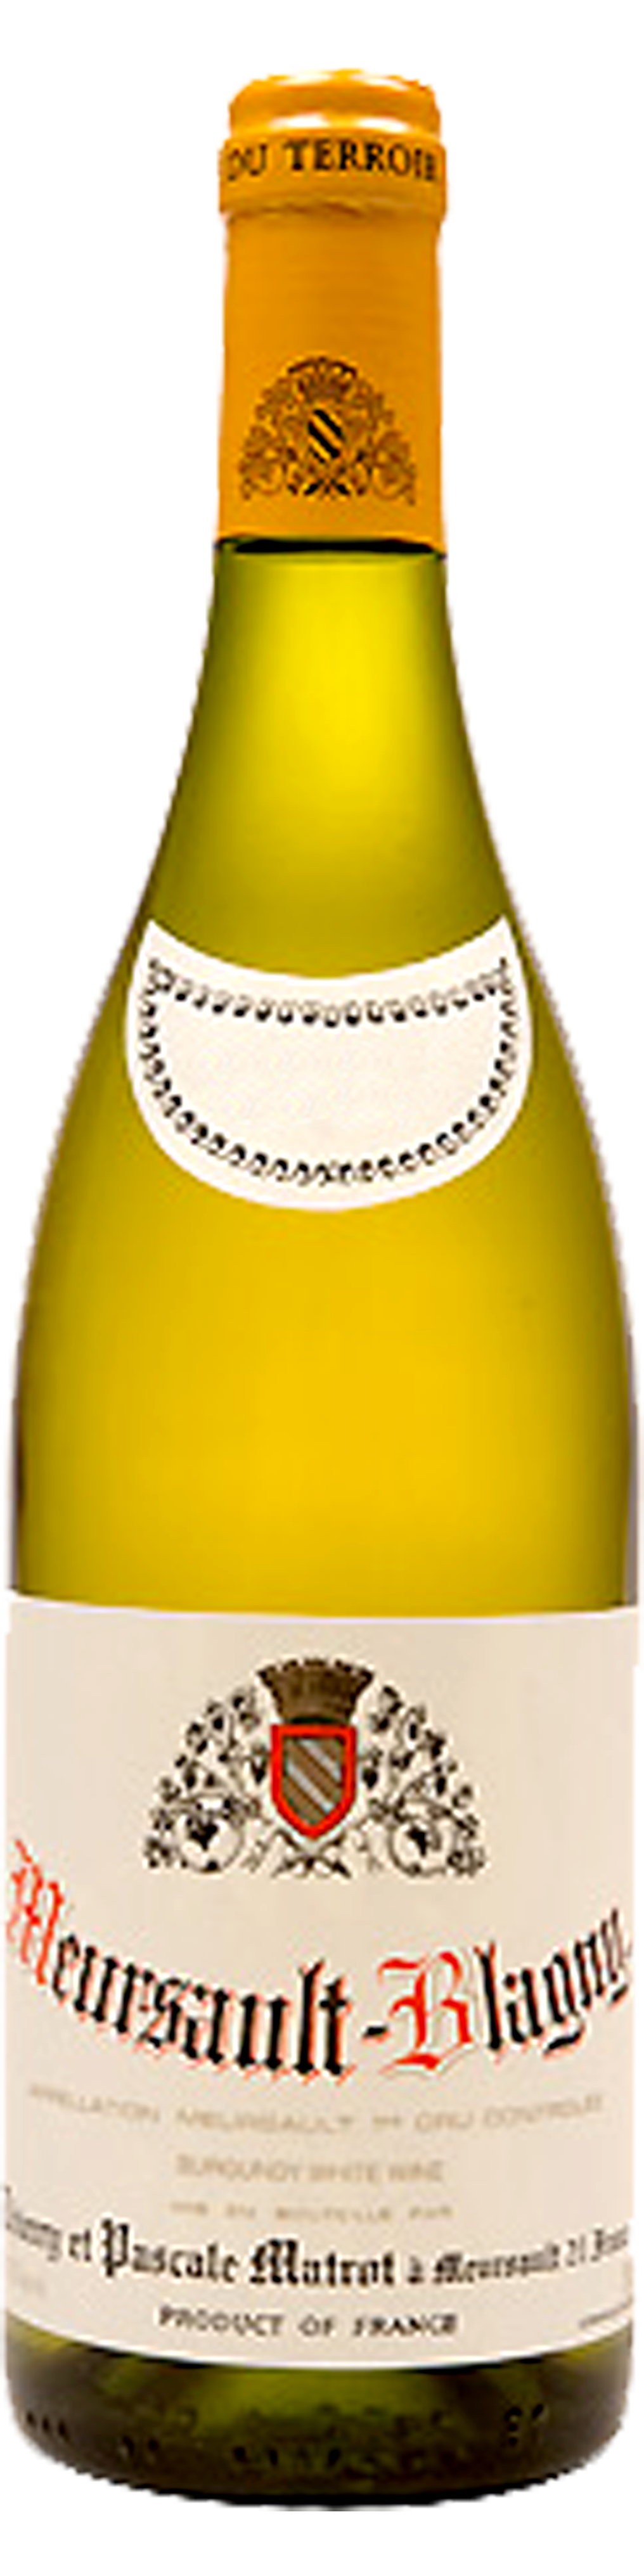 Bottle shot of 2011 Meursault Blagny 1er Cru